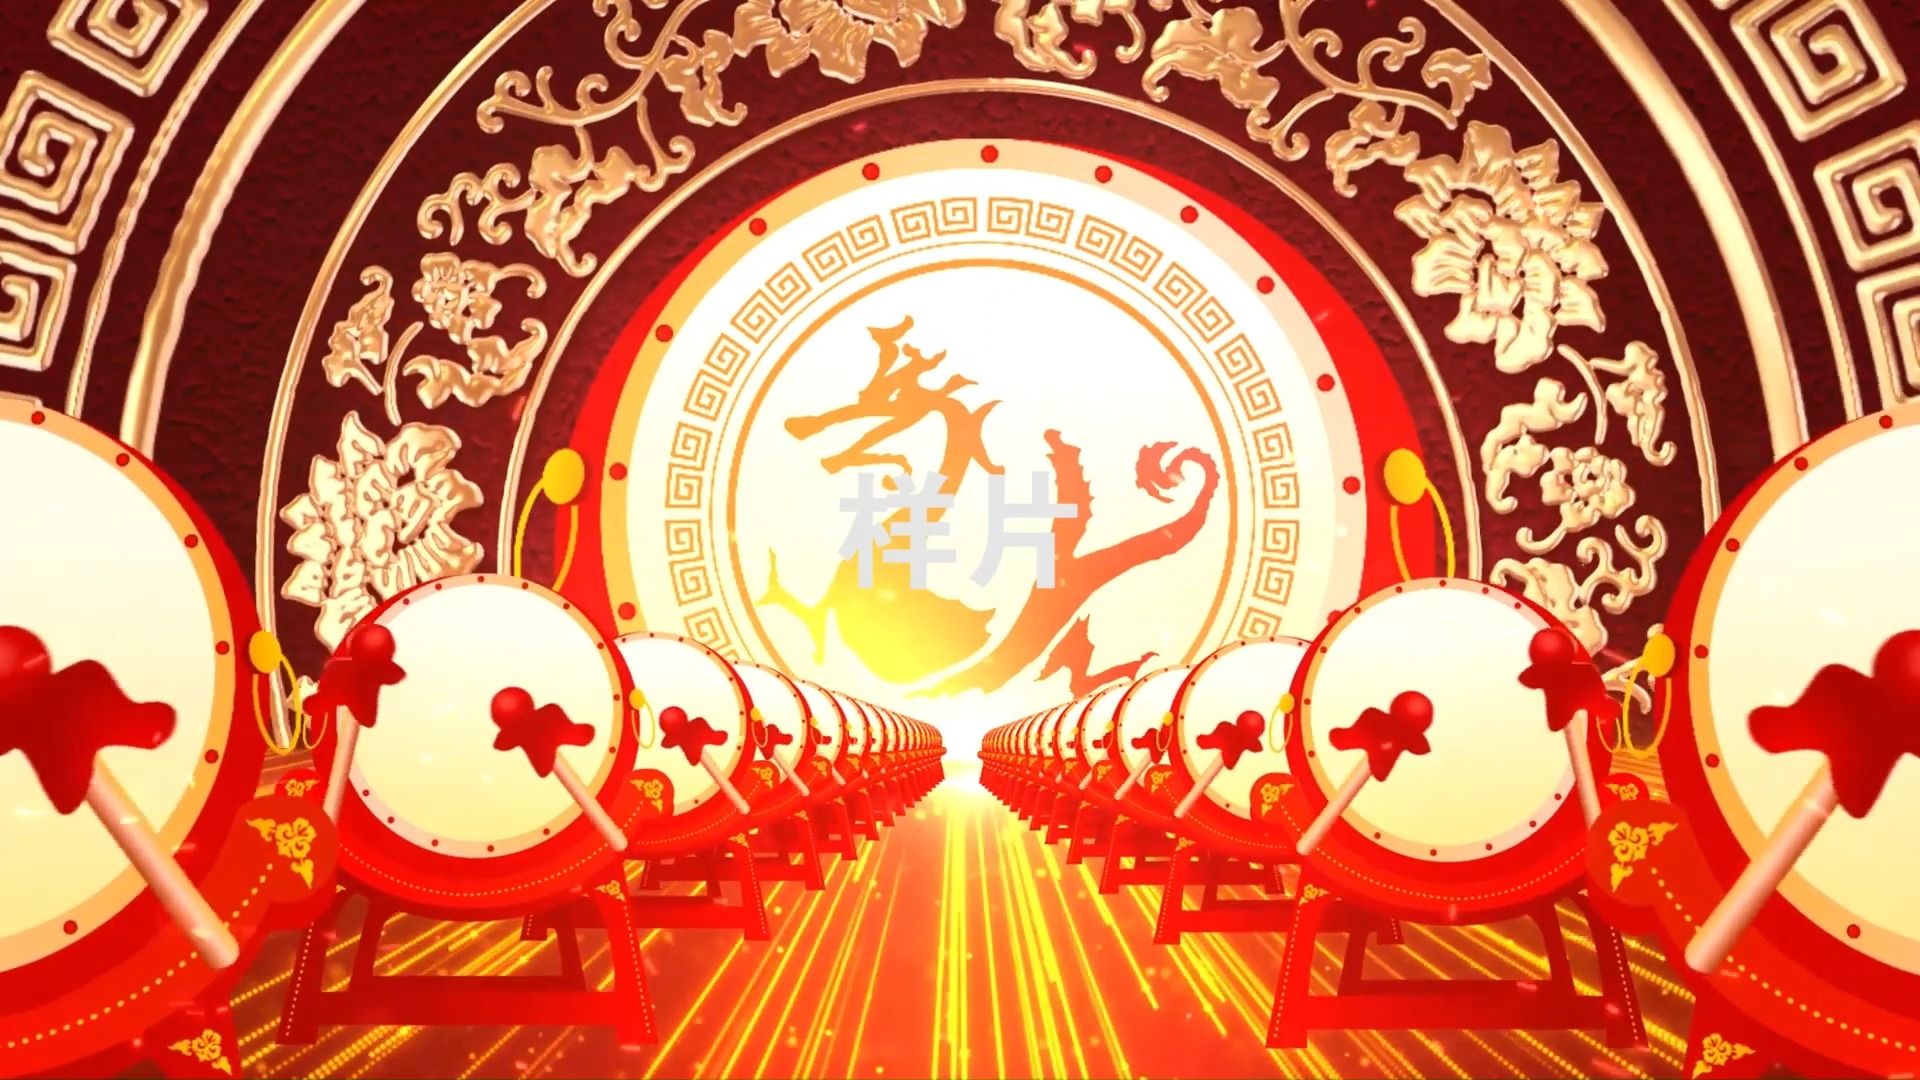 中国鼓大鼓舞狮《中国龙》鼓舞醒狮舞狮背景LED视频